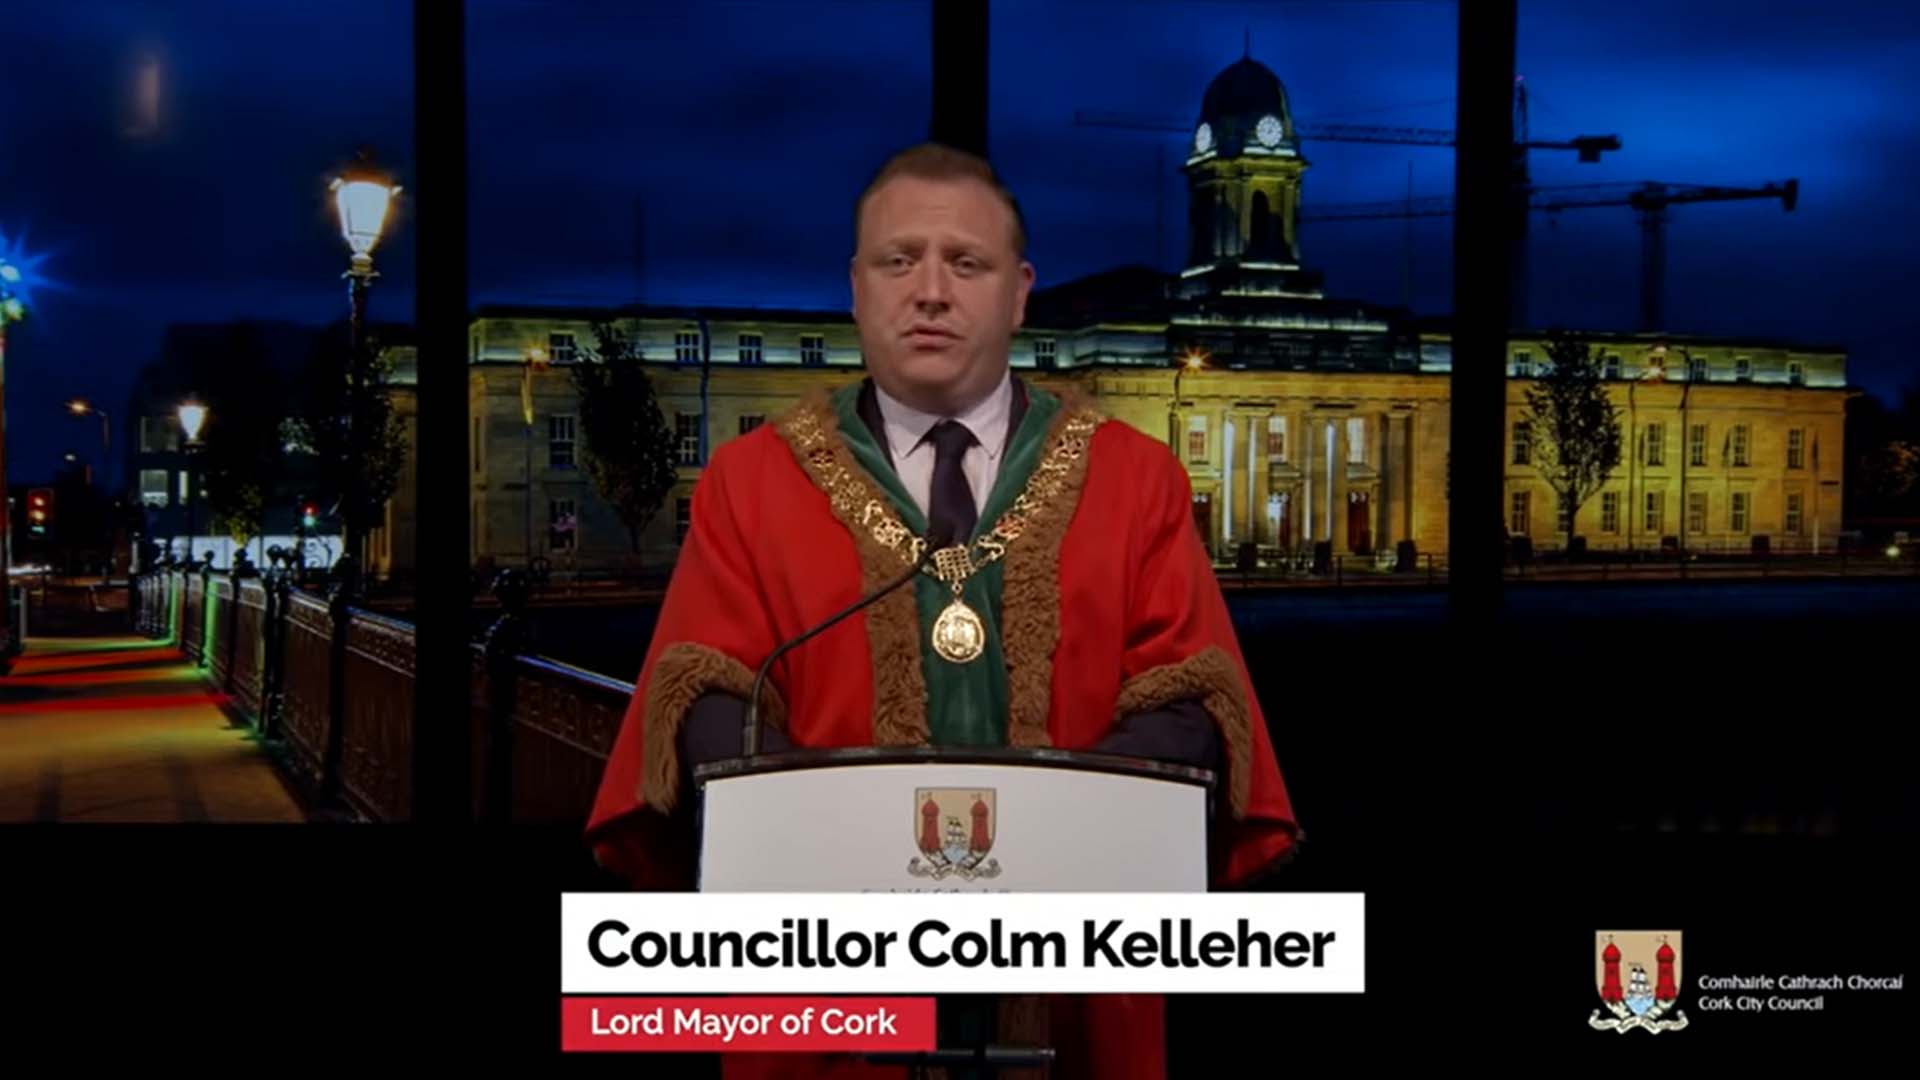 Lord Mayor of Cork, Cllr. Colm Kelleher's Virtual School Visit‍